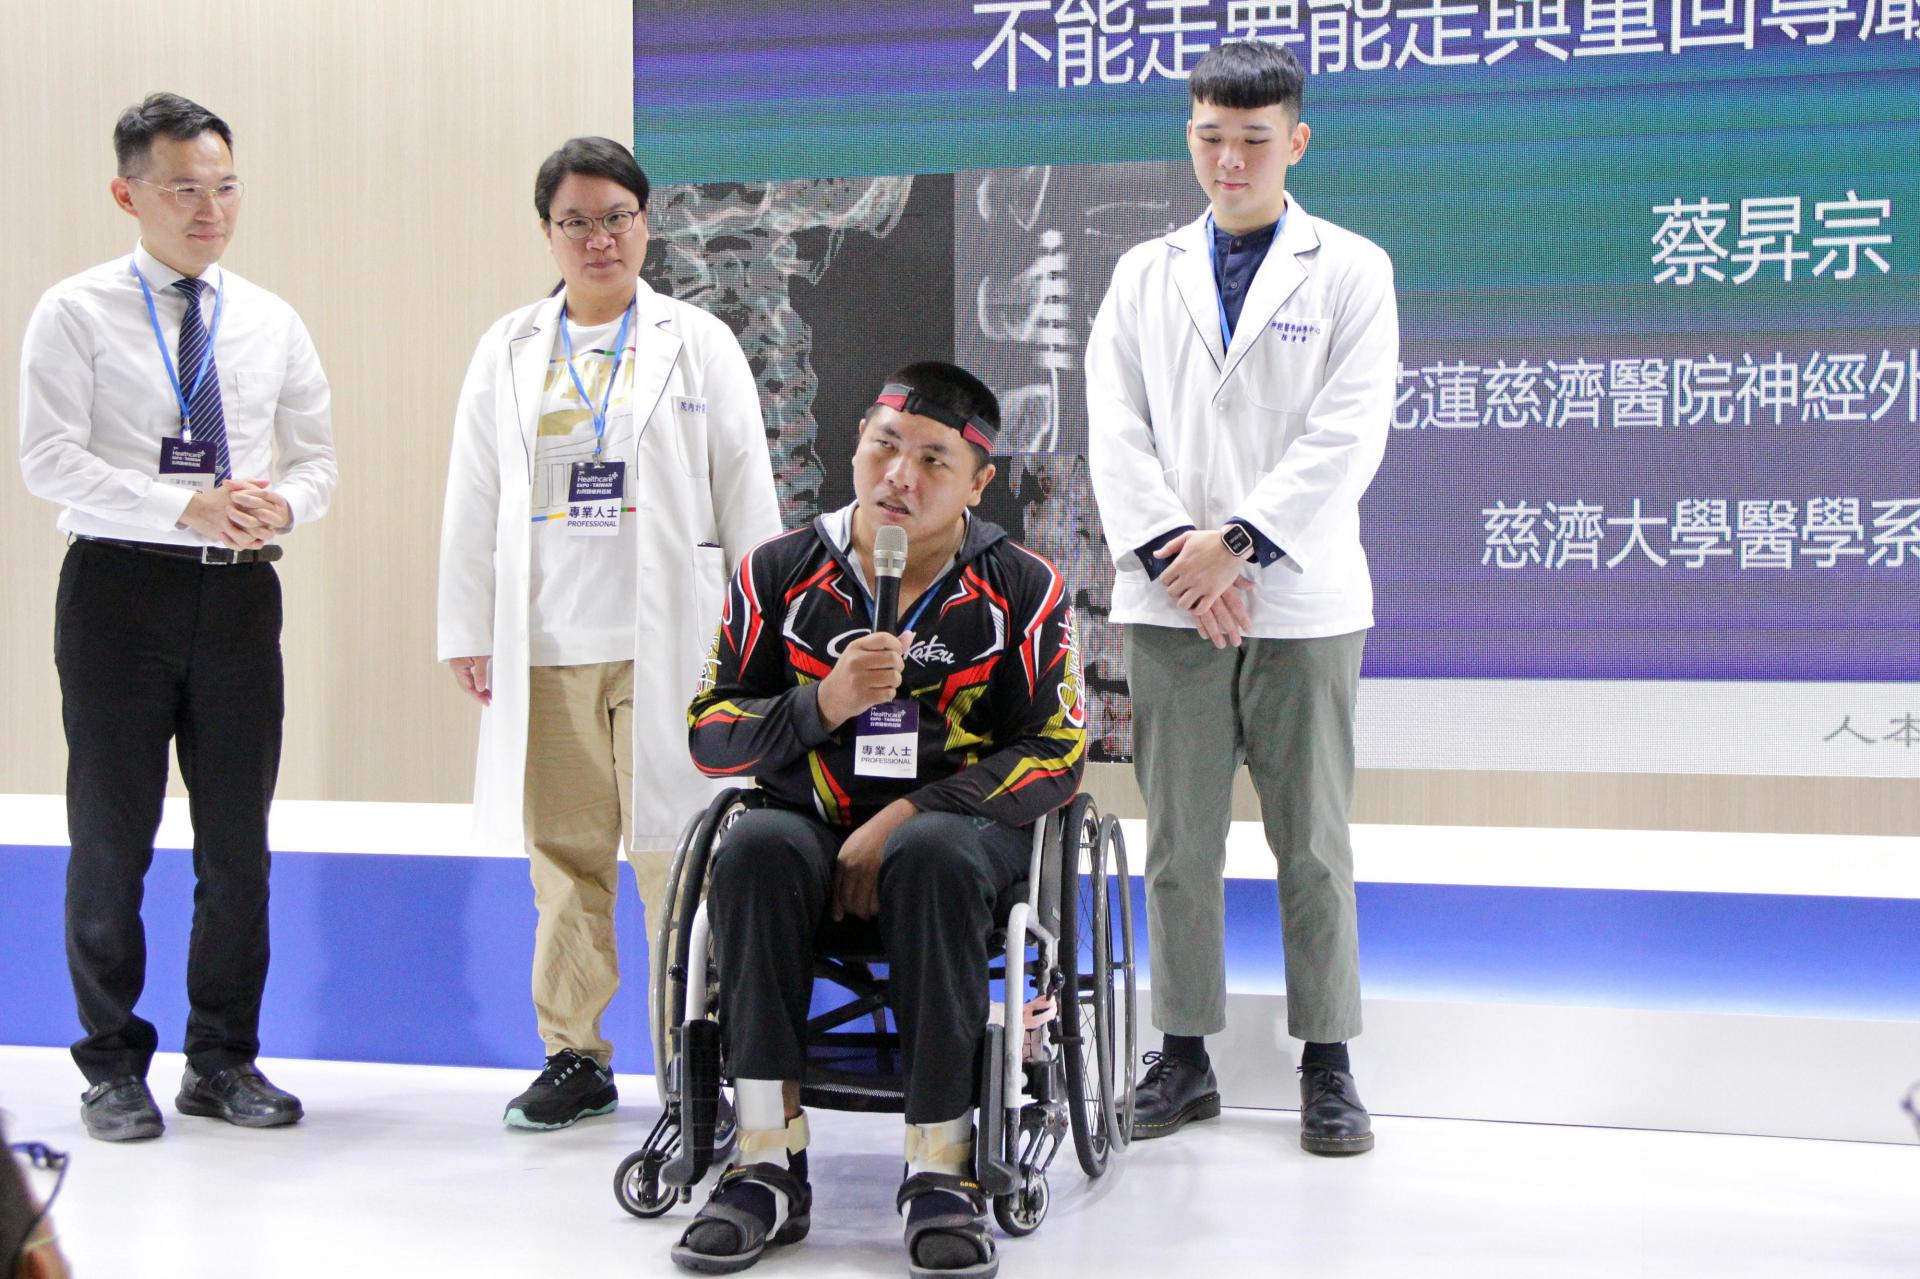 達哥感謝花蓮慈院醫療團隊，讓他雙腿的感覺和行動能力都有明顯的進步。